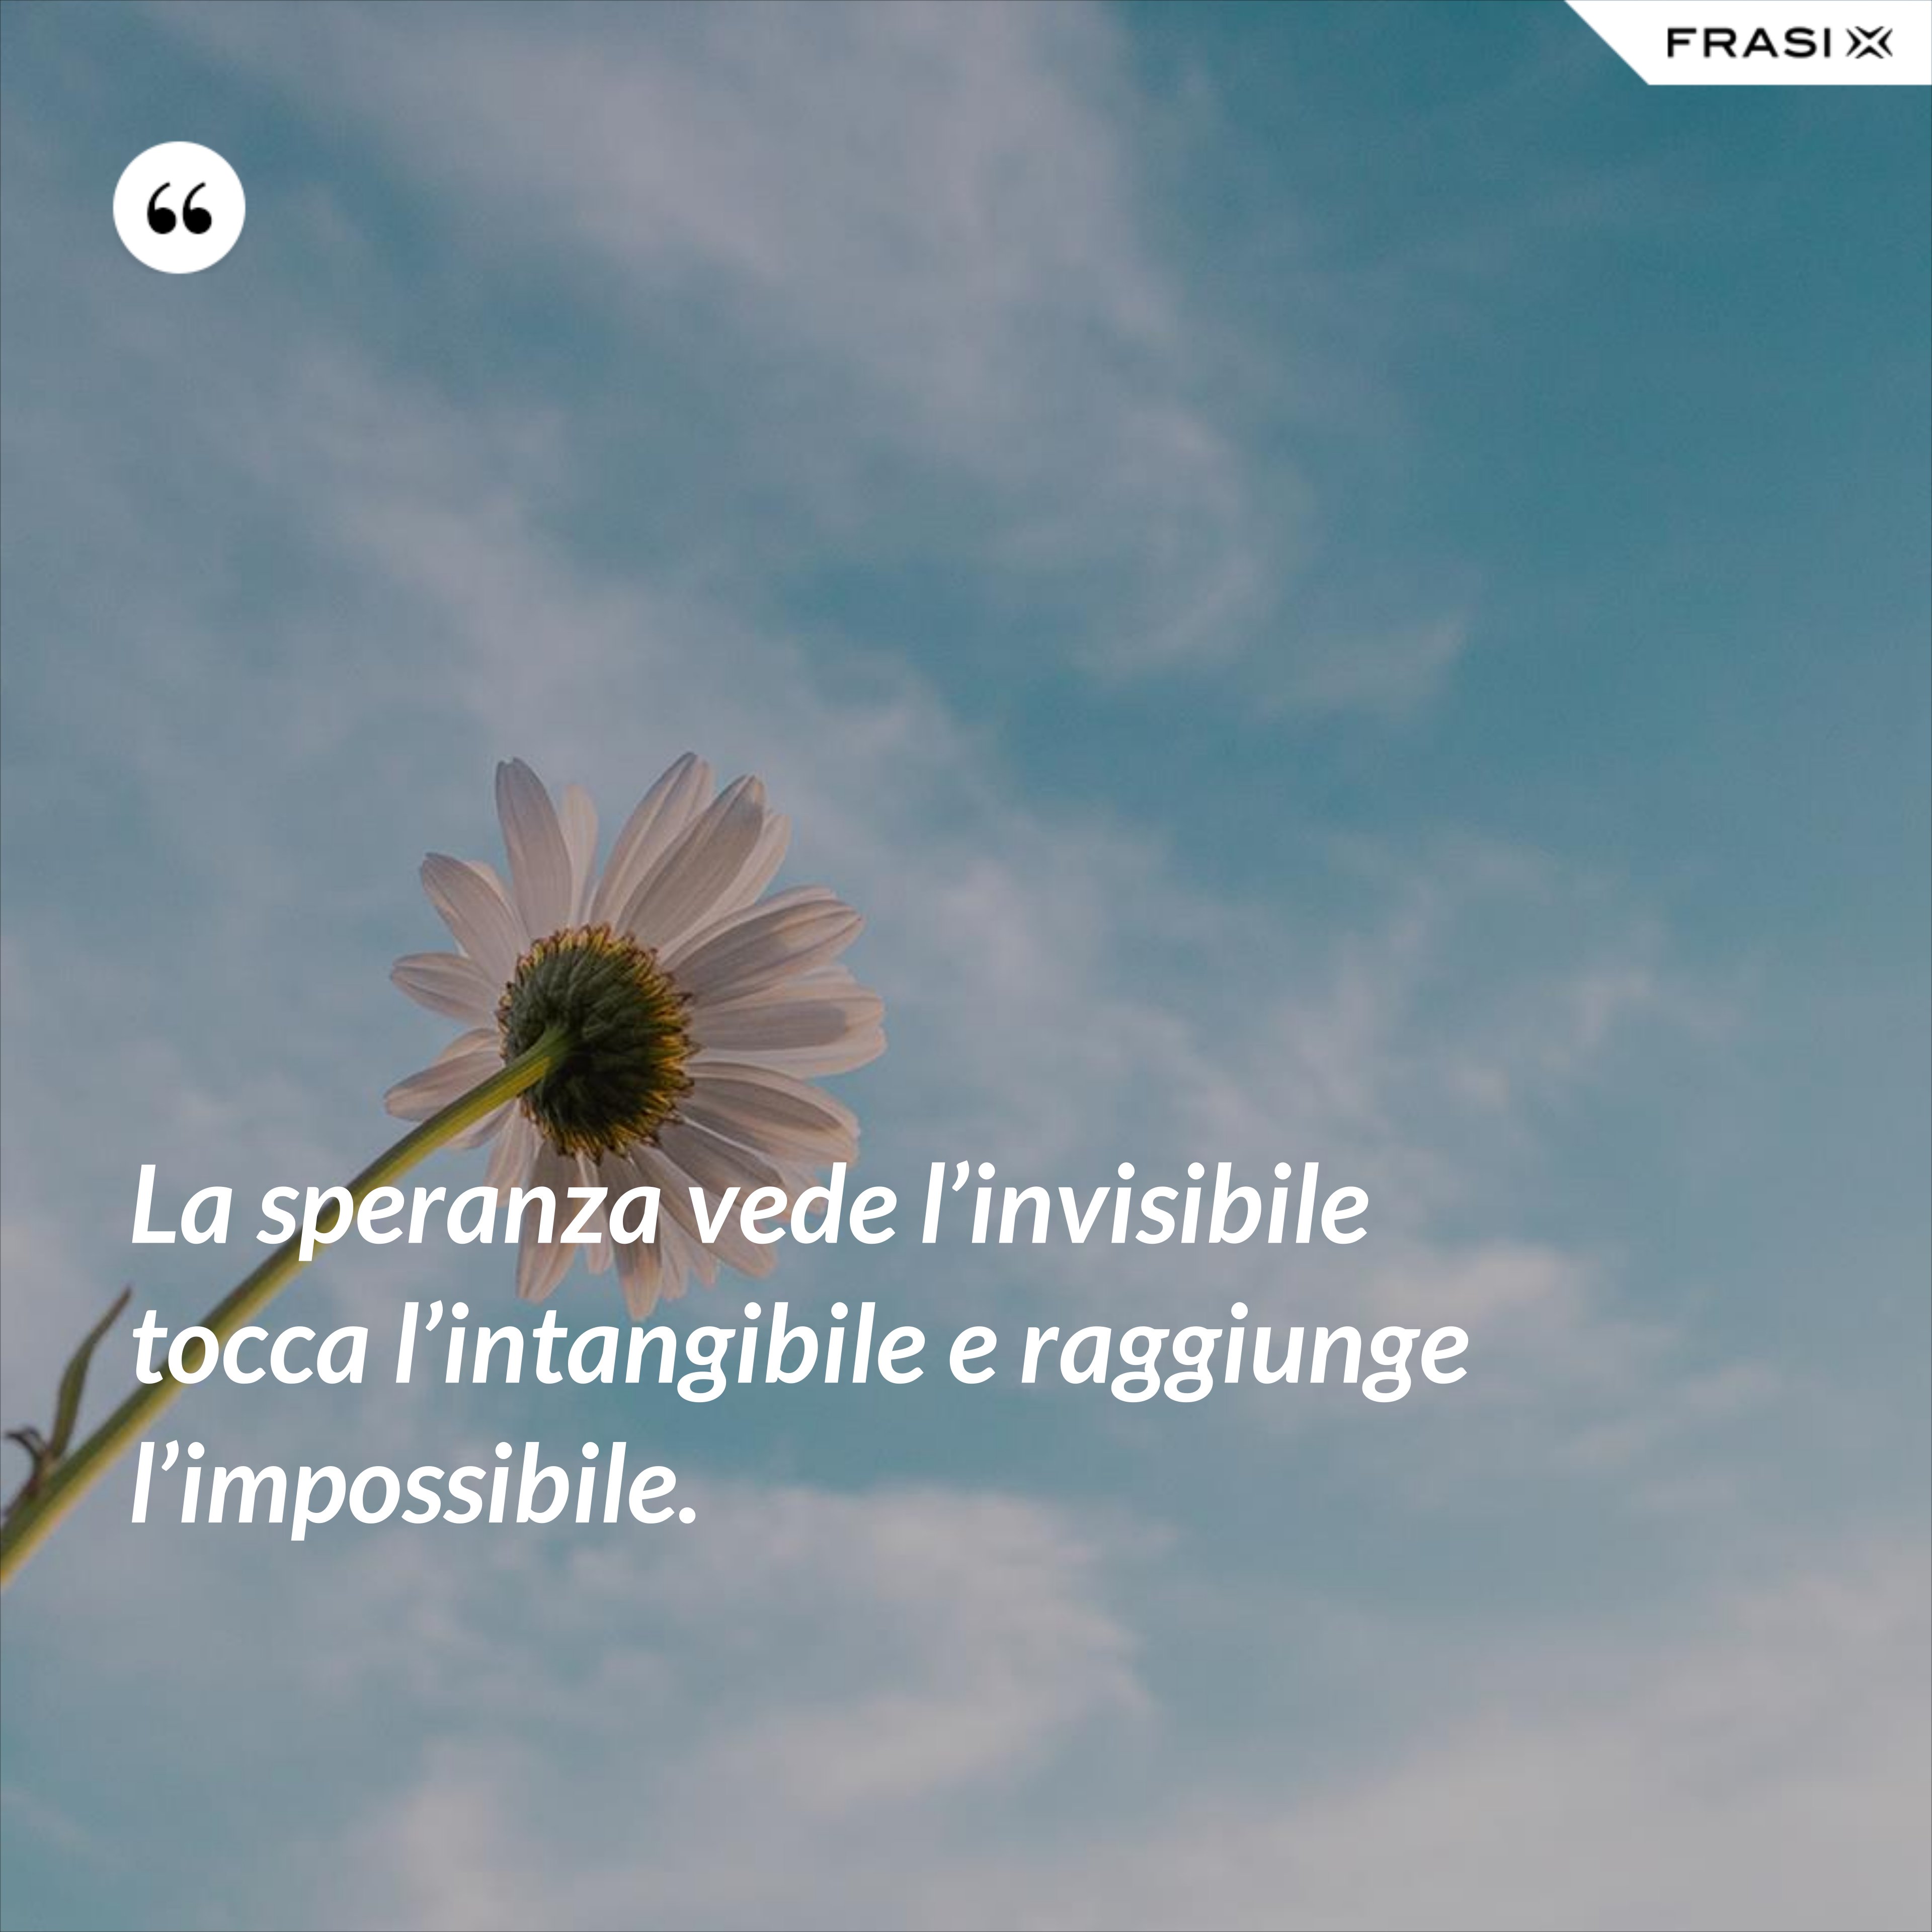 La speranza vede l’invisibile tocca l’intangibile e raggiunge l’impossibile. - Anonimo